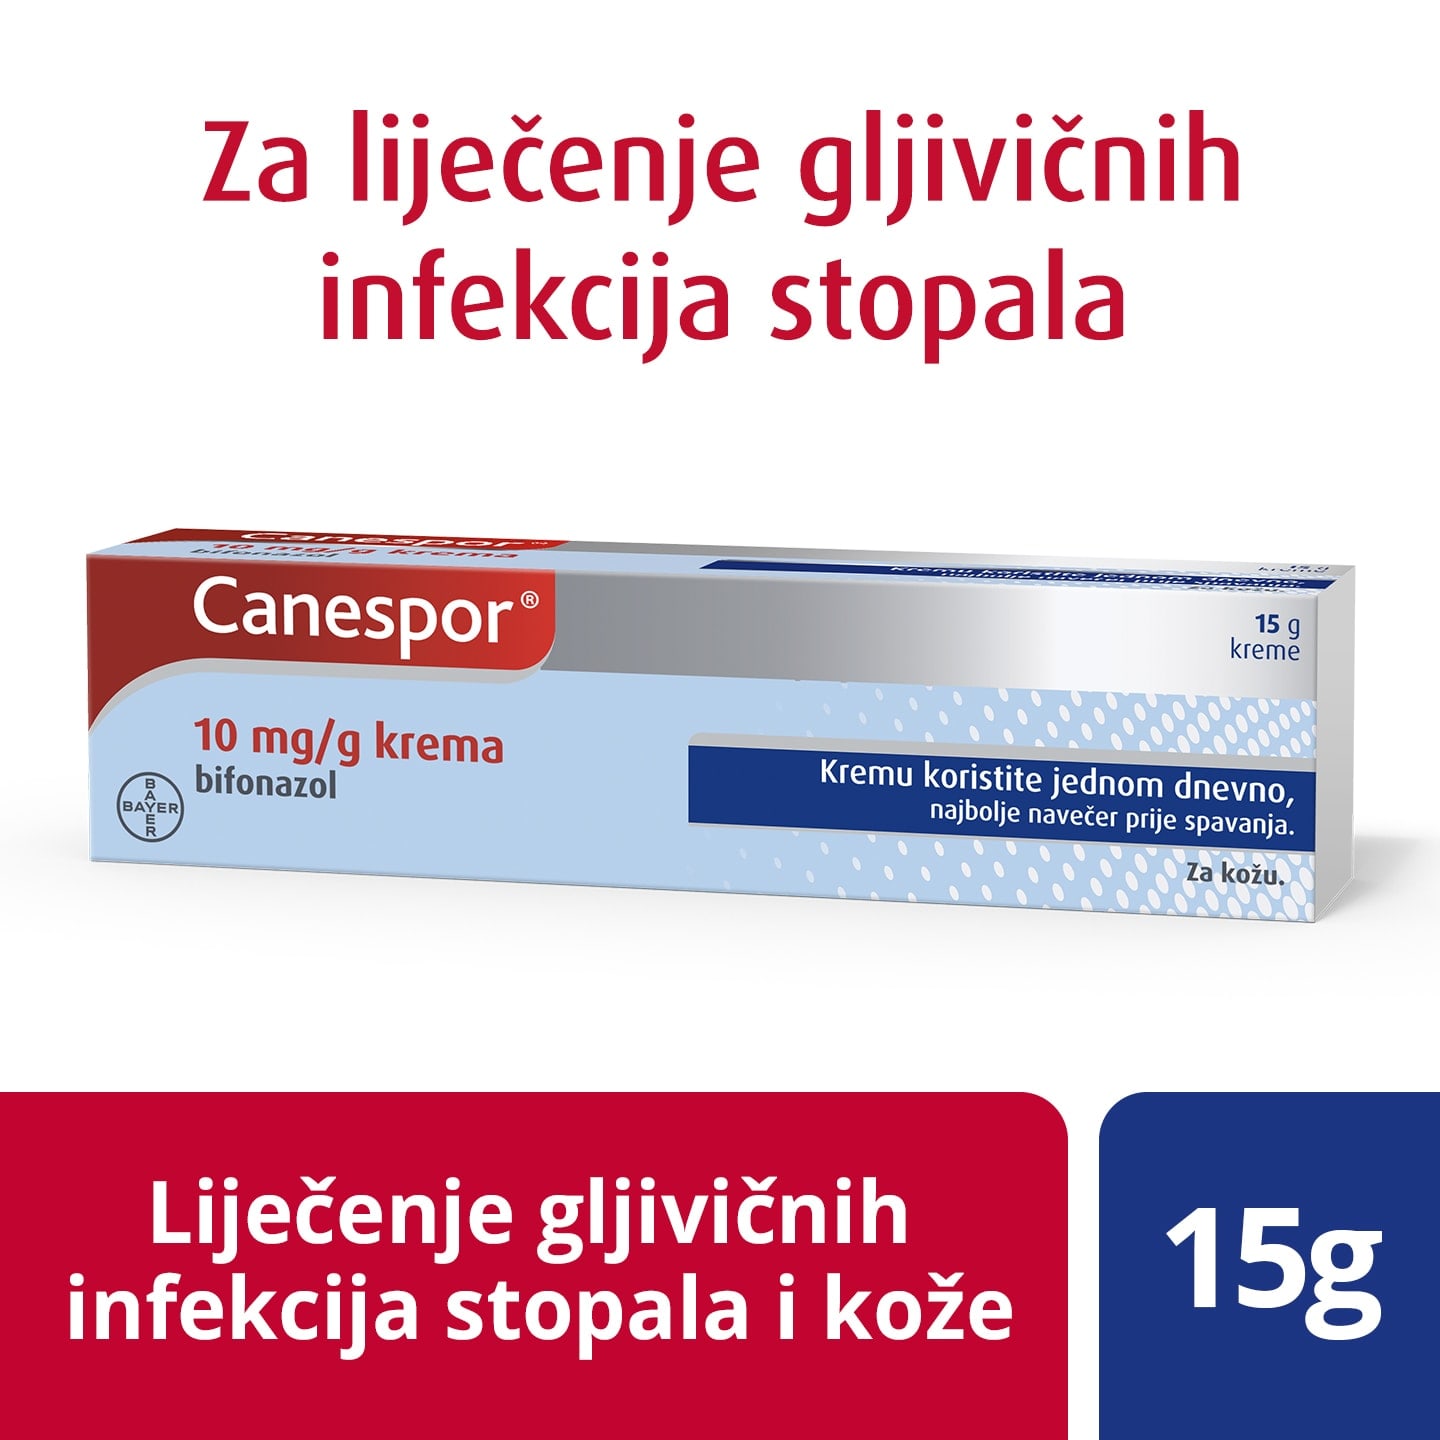 Canespor® 10 mg/g krema za liječenje gljivične infekcije stopala i gljivičnih infekcija kože 15 g